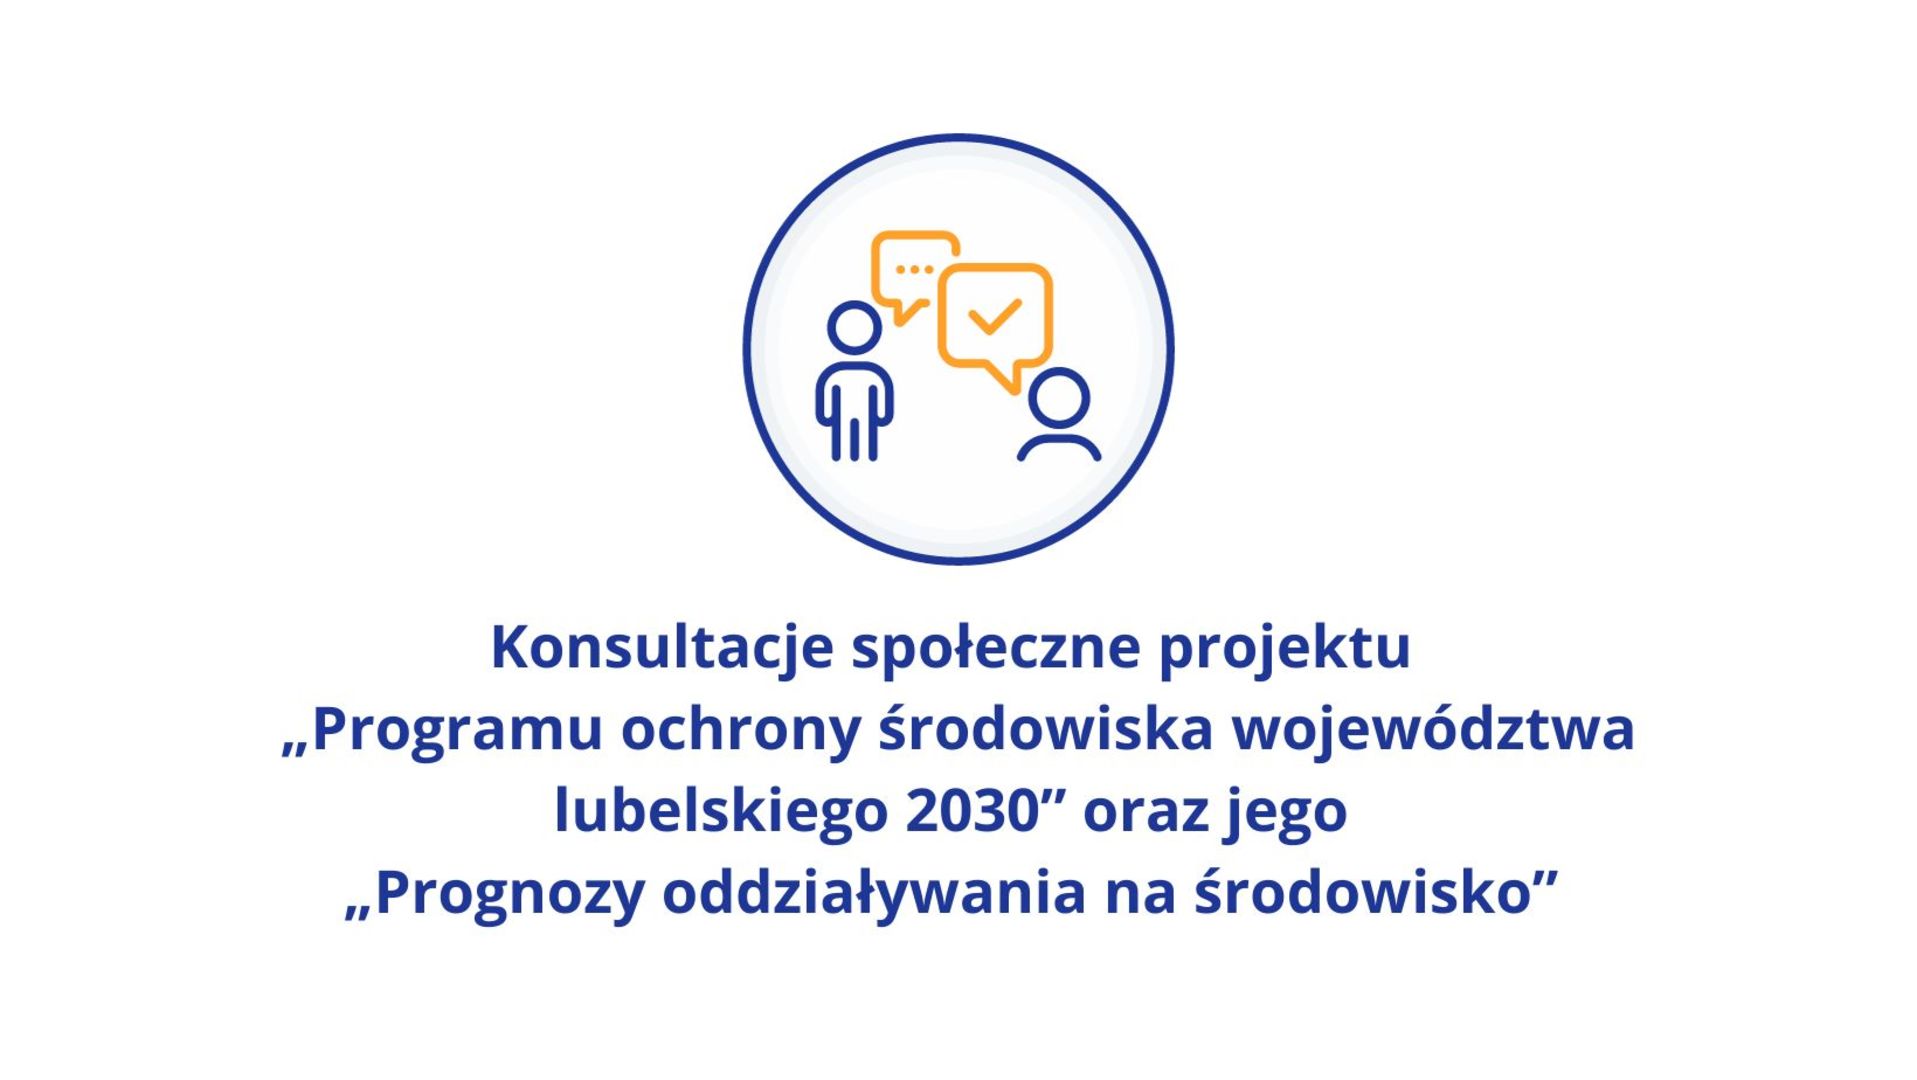 Konsultacje społeczne projektu  „Programu ochrony środowiska województwa lubelskiego 2030” oraz jego  „Prognozy oddziaływania na środowisko”